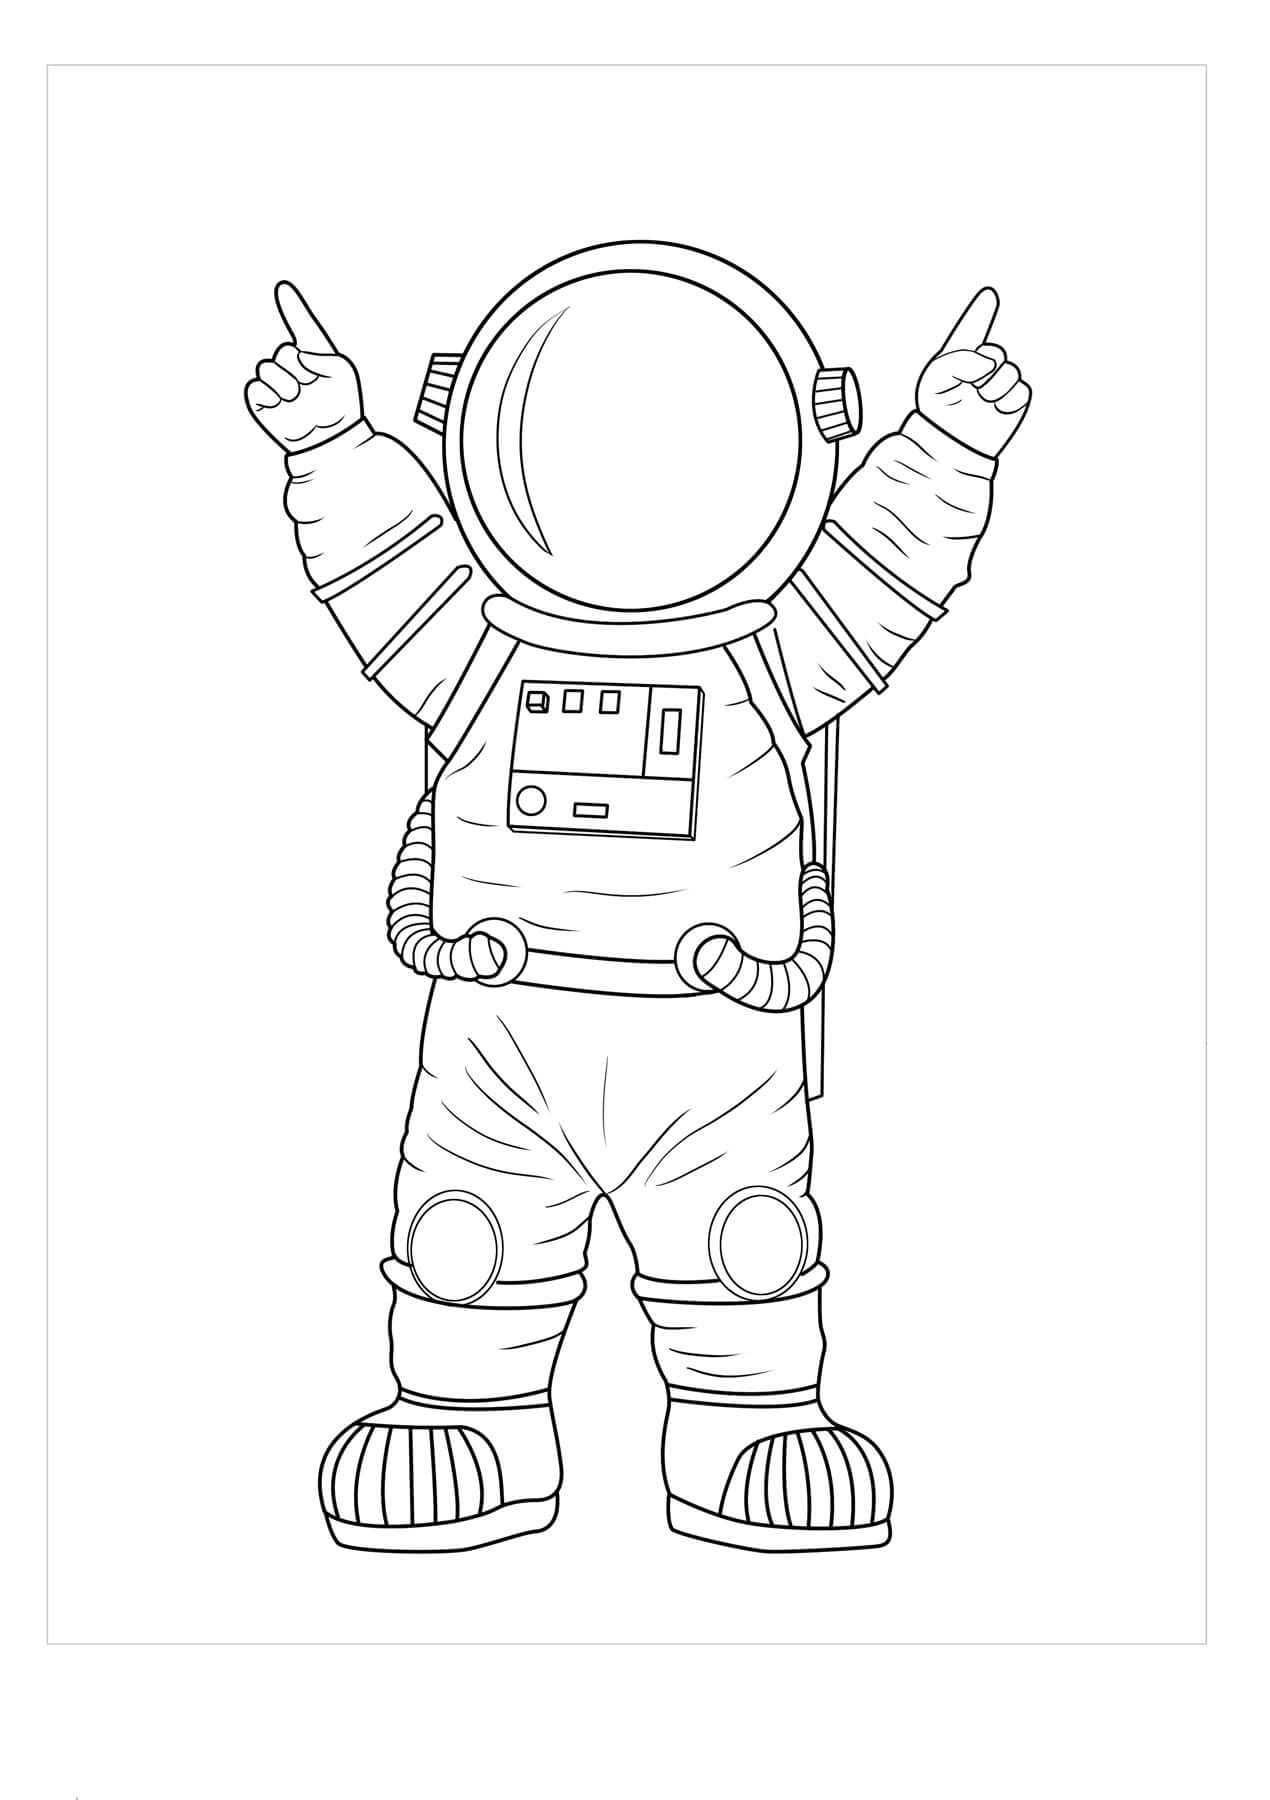 Как нарисовать скафандр. Космонавт раскраска. Космонавт раскраска для детей. Раскраска космонавт в космосе. Космонавт трафарет для детей.